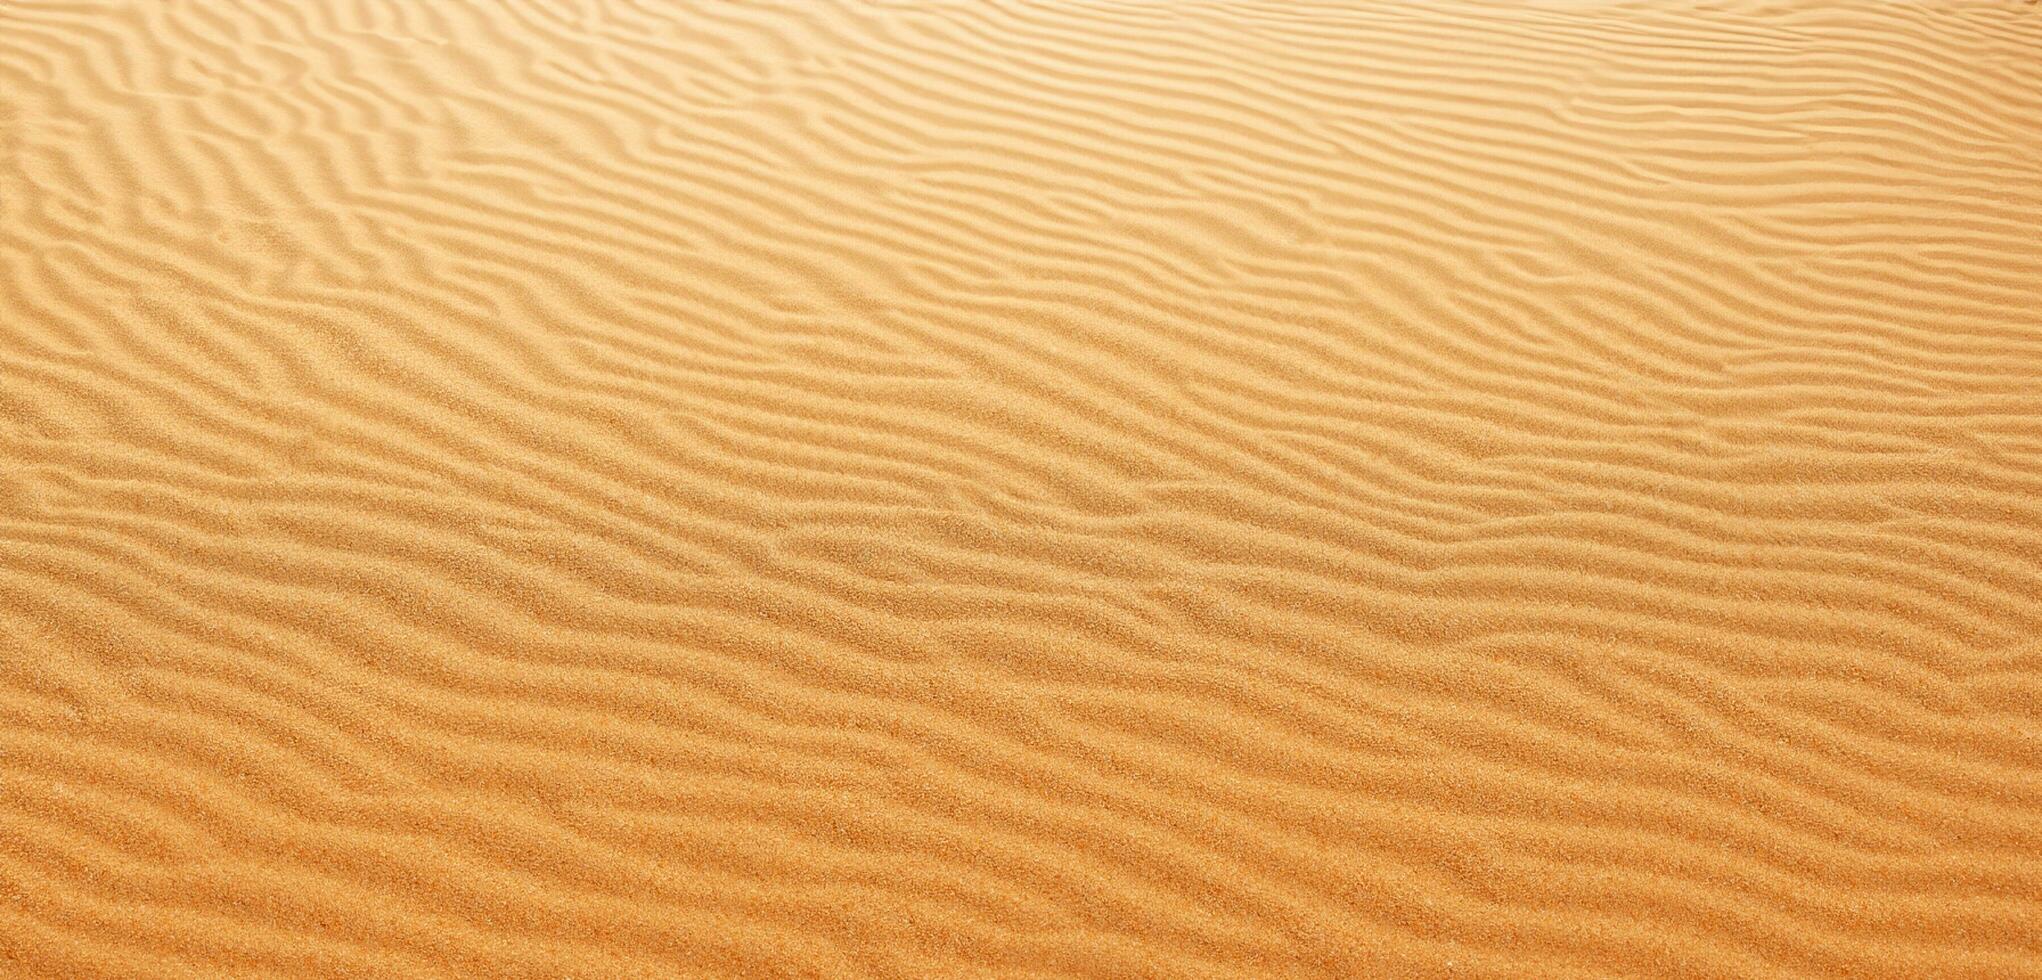 areia fundo panorama do a deserto rugas do areia estourado de a vento foto